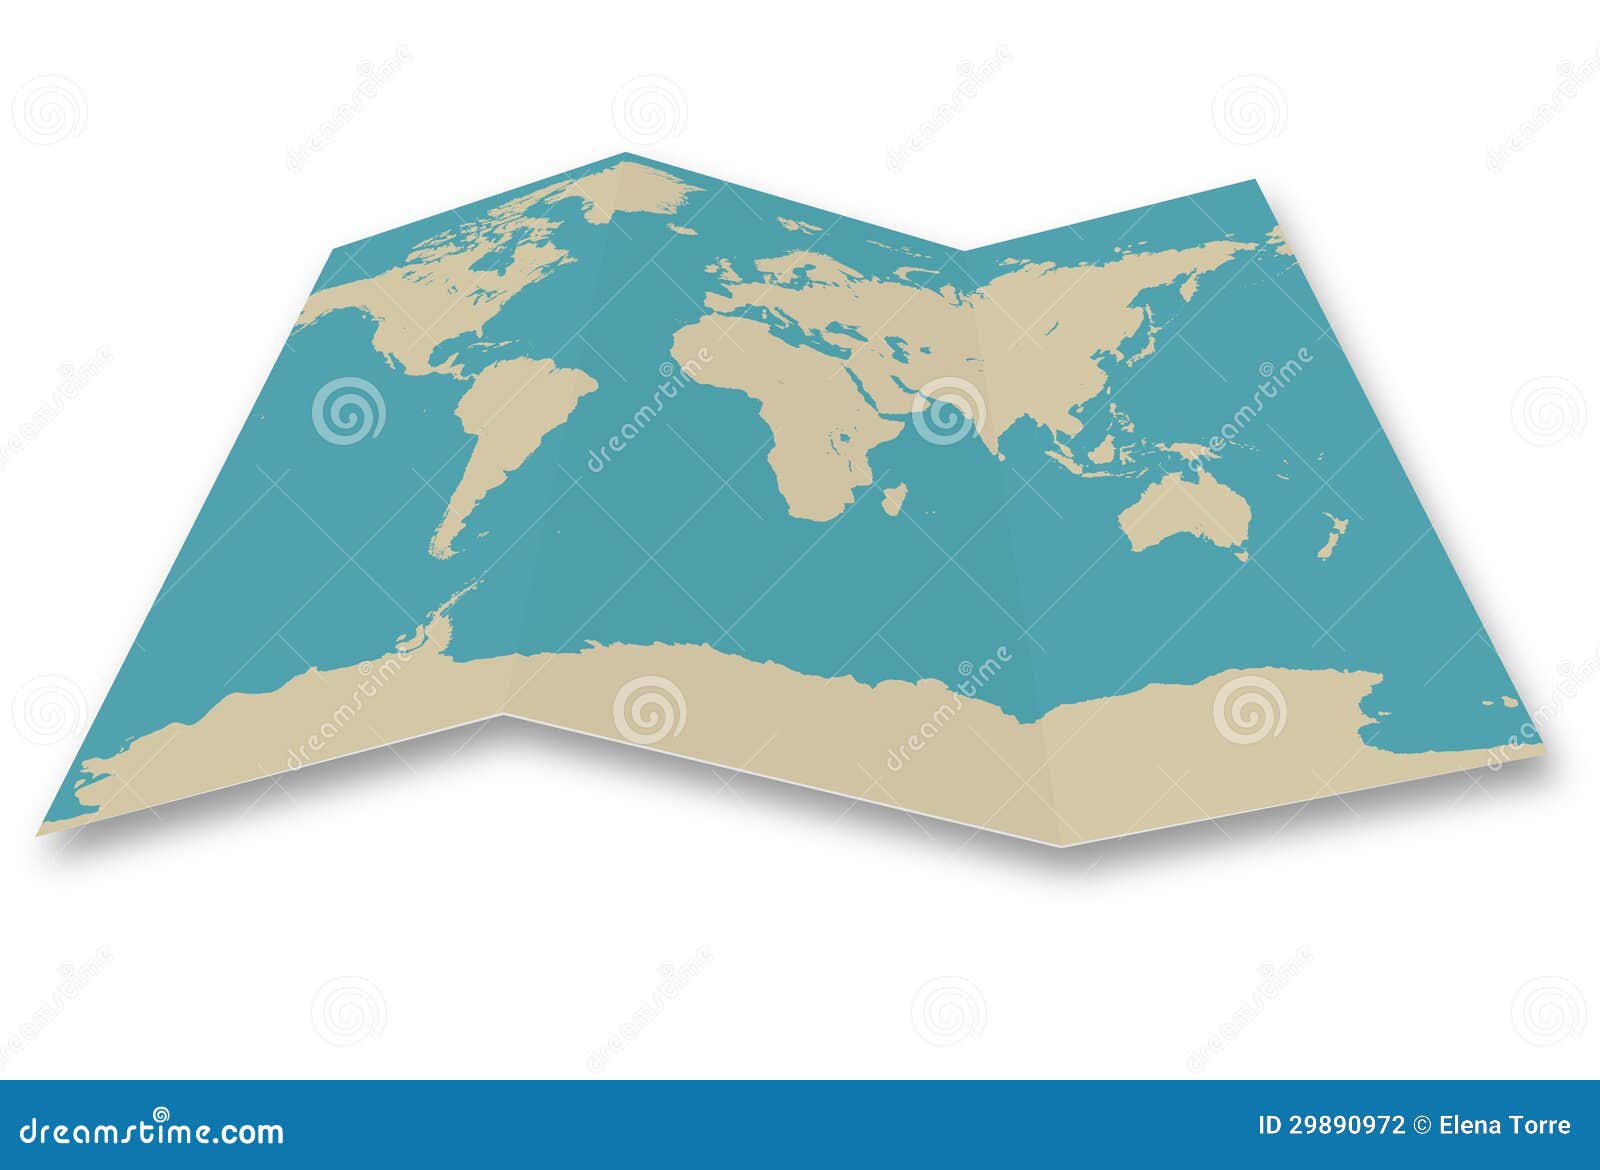 world map folded